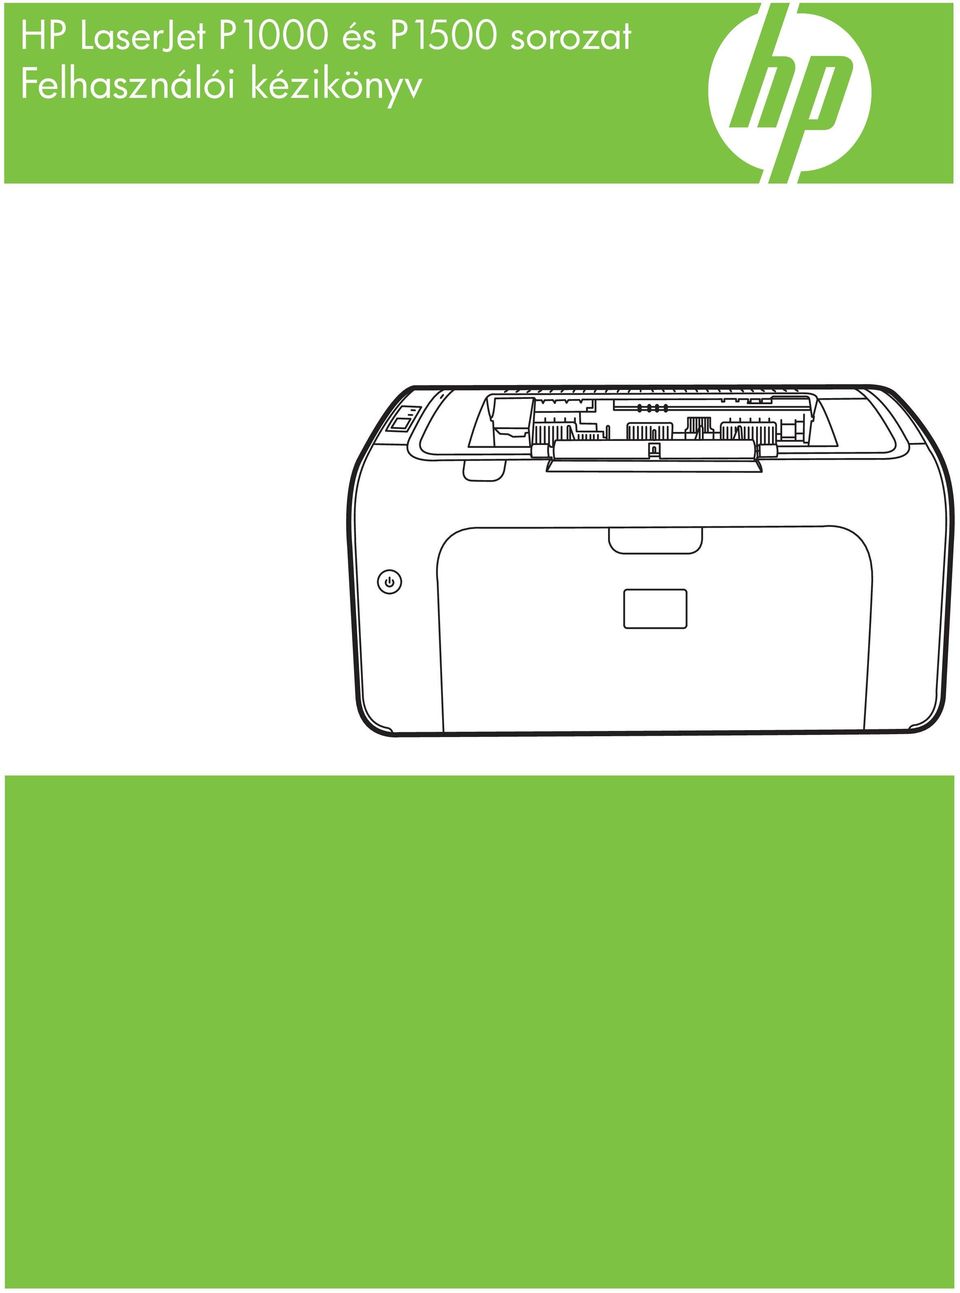 HP LaserJet P1000 és P1500 sorozat Felhasználói kézikönyv - PDF Ingyenes  letöltés